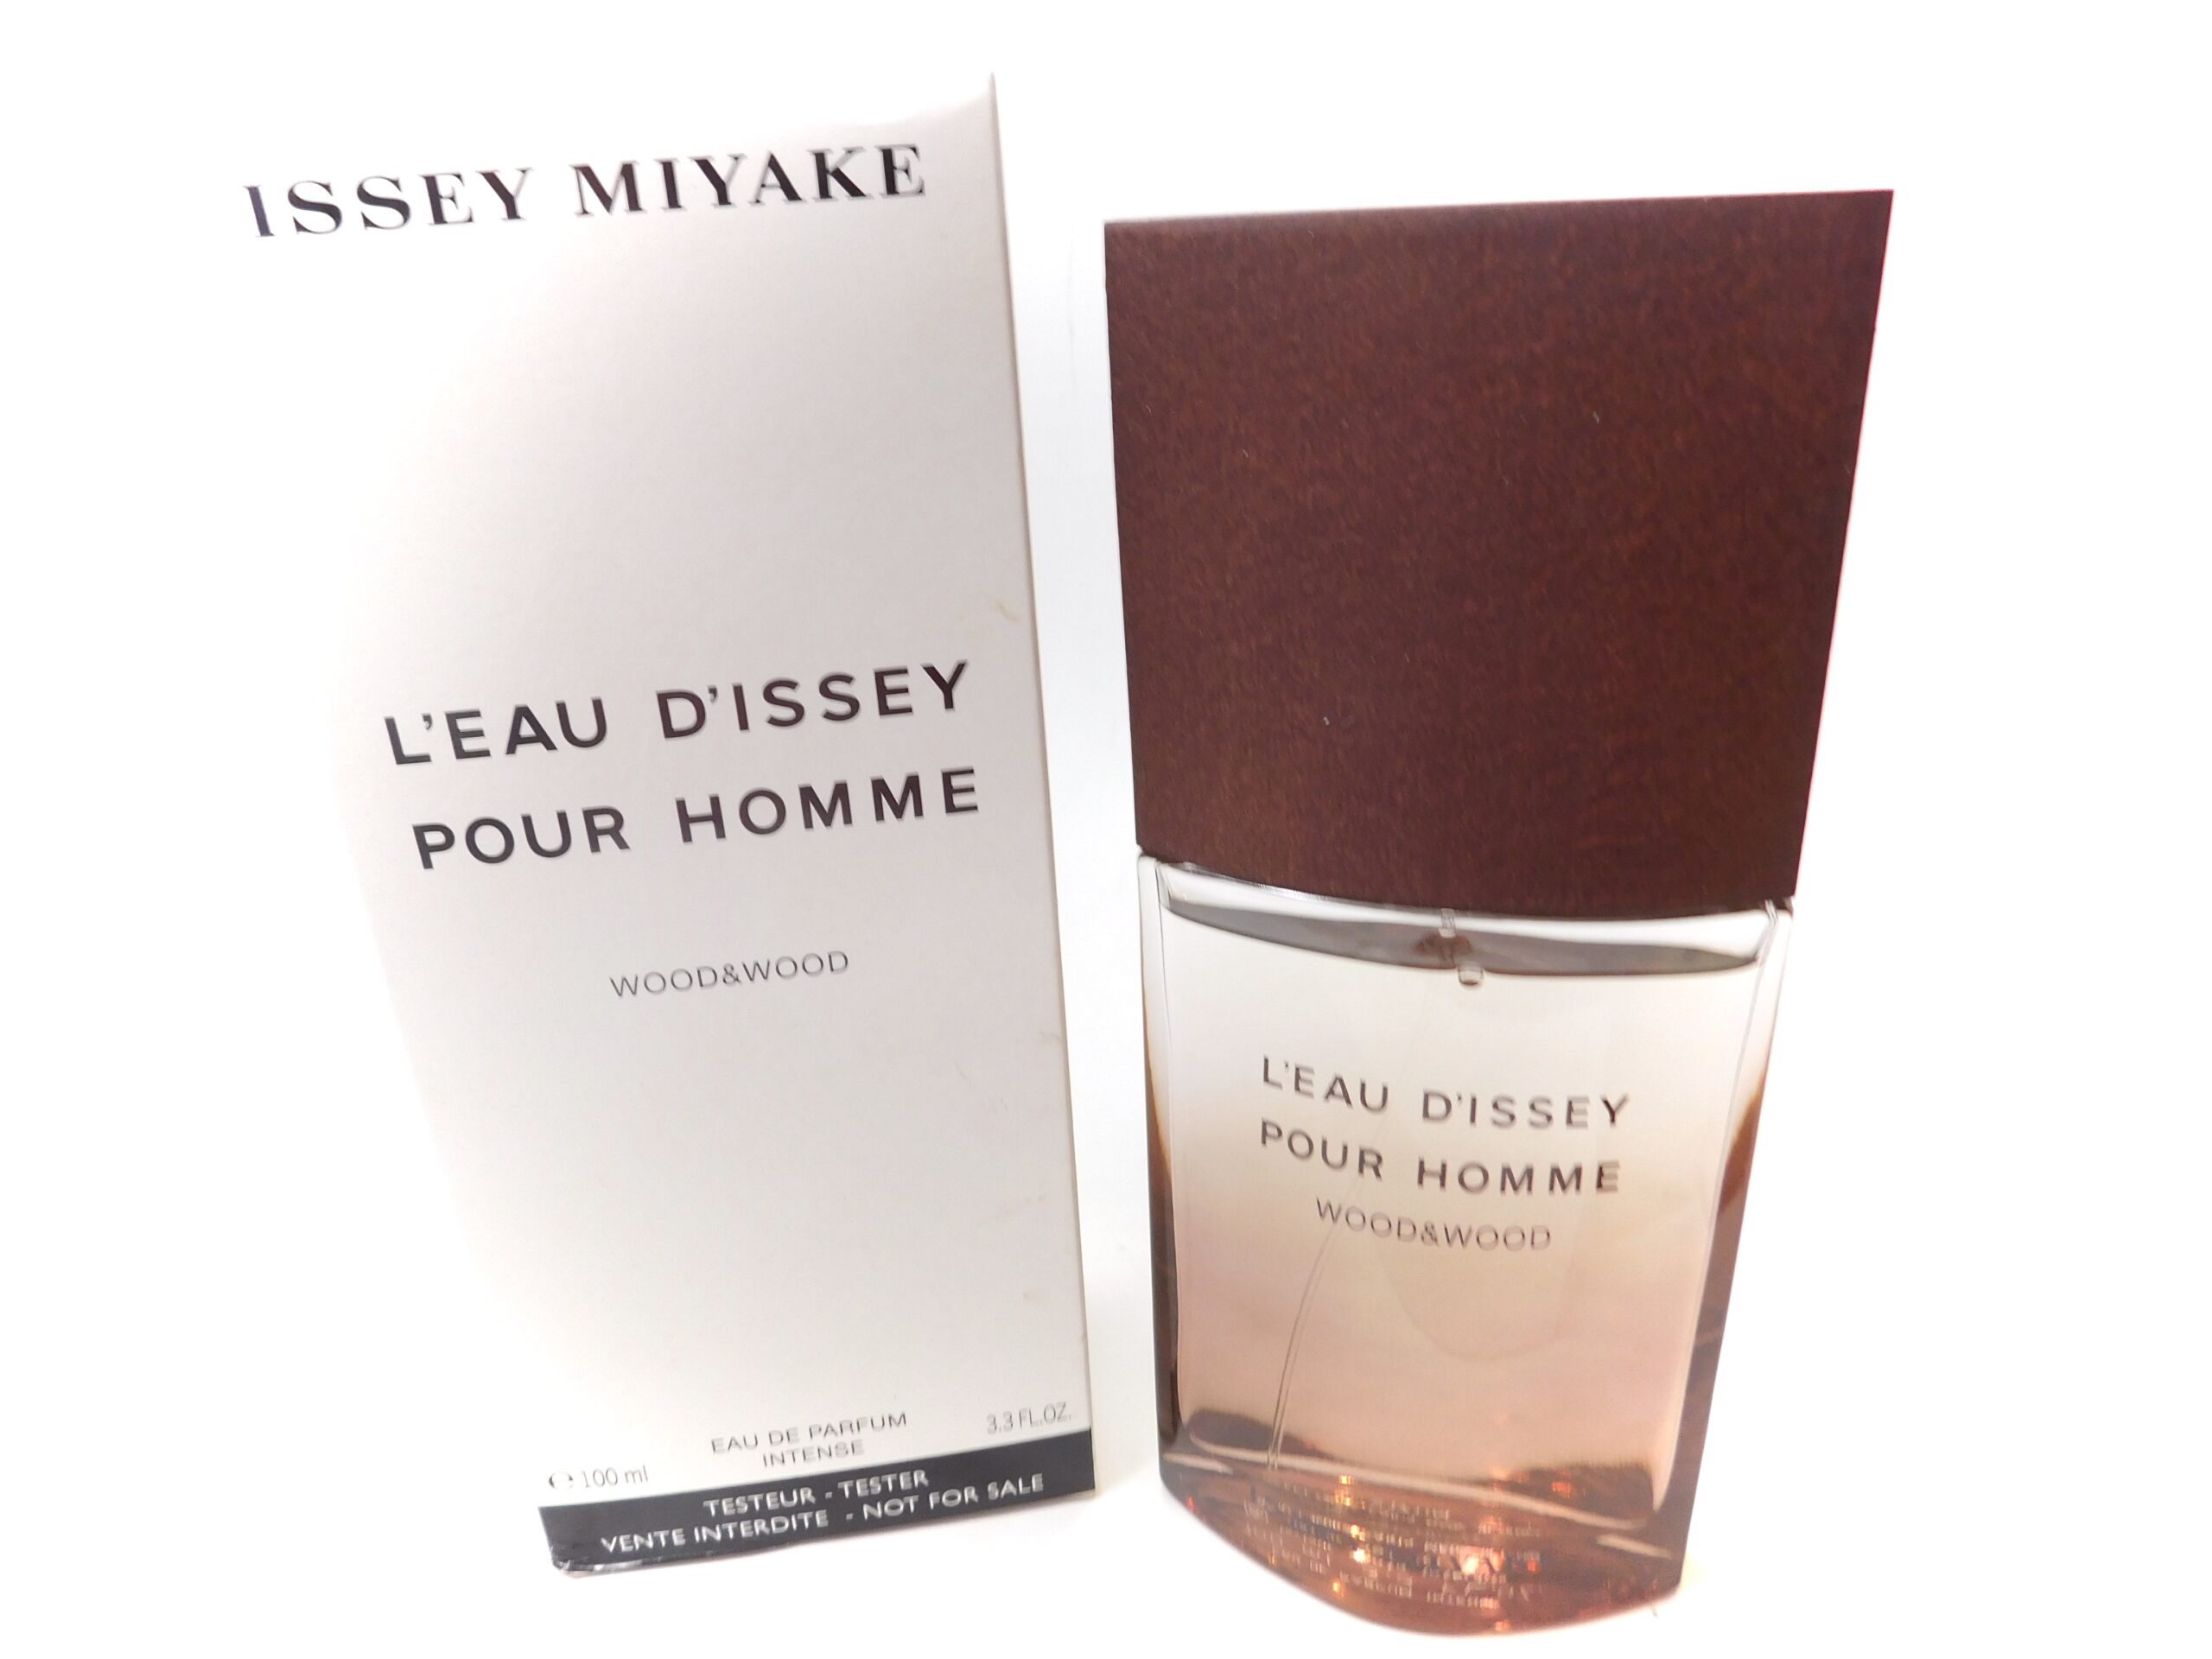 ISSEY MIYAKE WOOD & WOOD 3.4 EDP INTENSE Parfum woody sweet Cologne ...